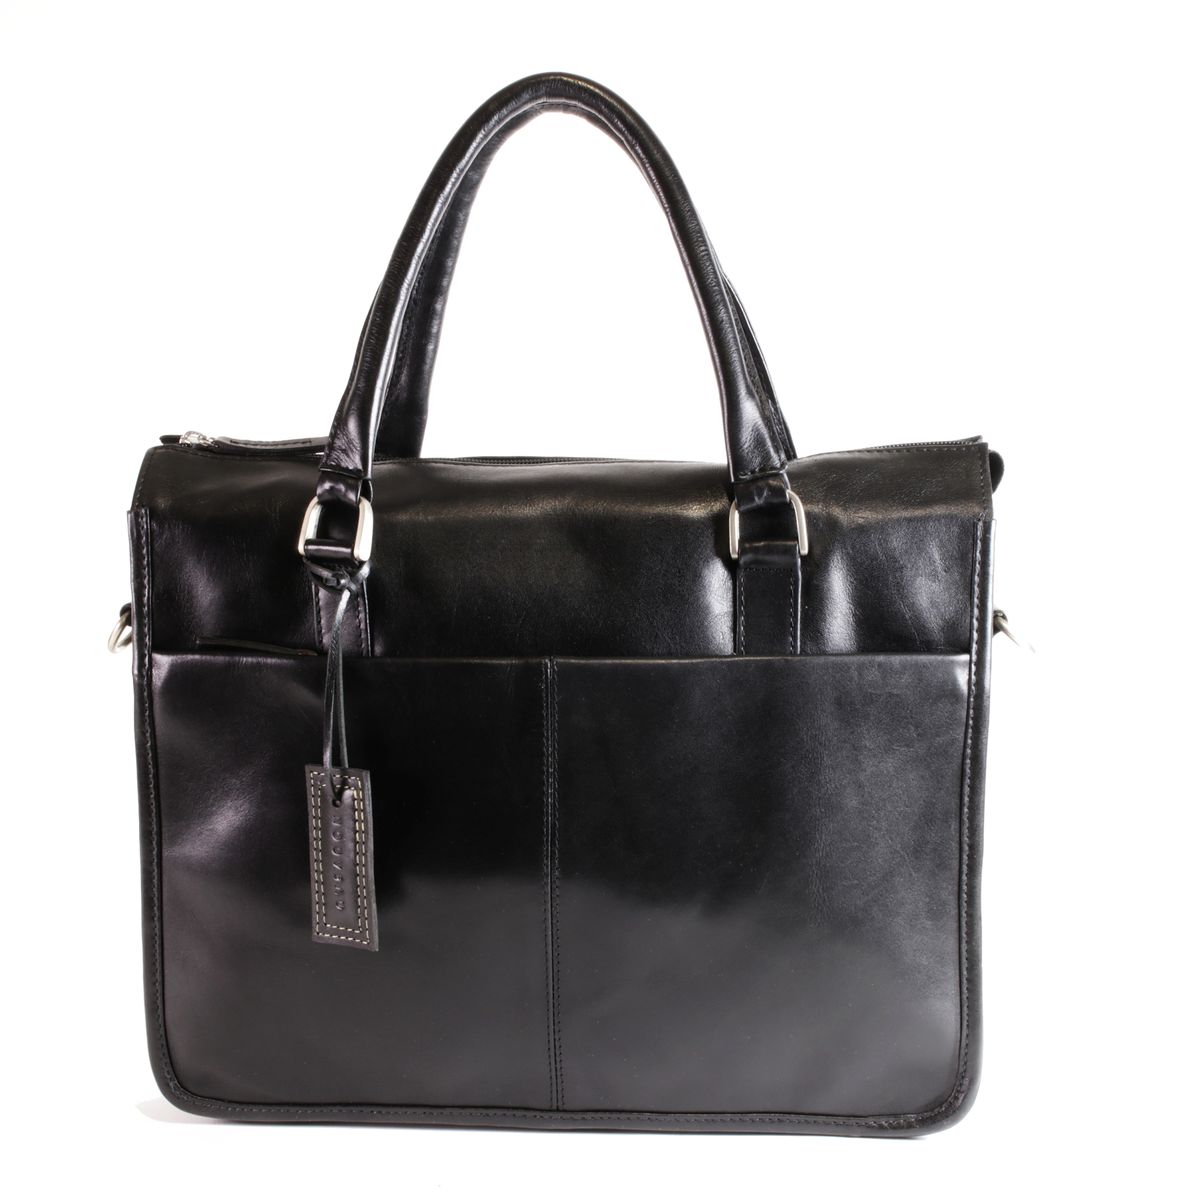 NUVO - Genuine Leather Peregrine laptop bag in black | Buy Online in ...